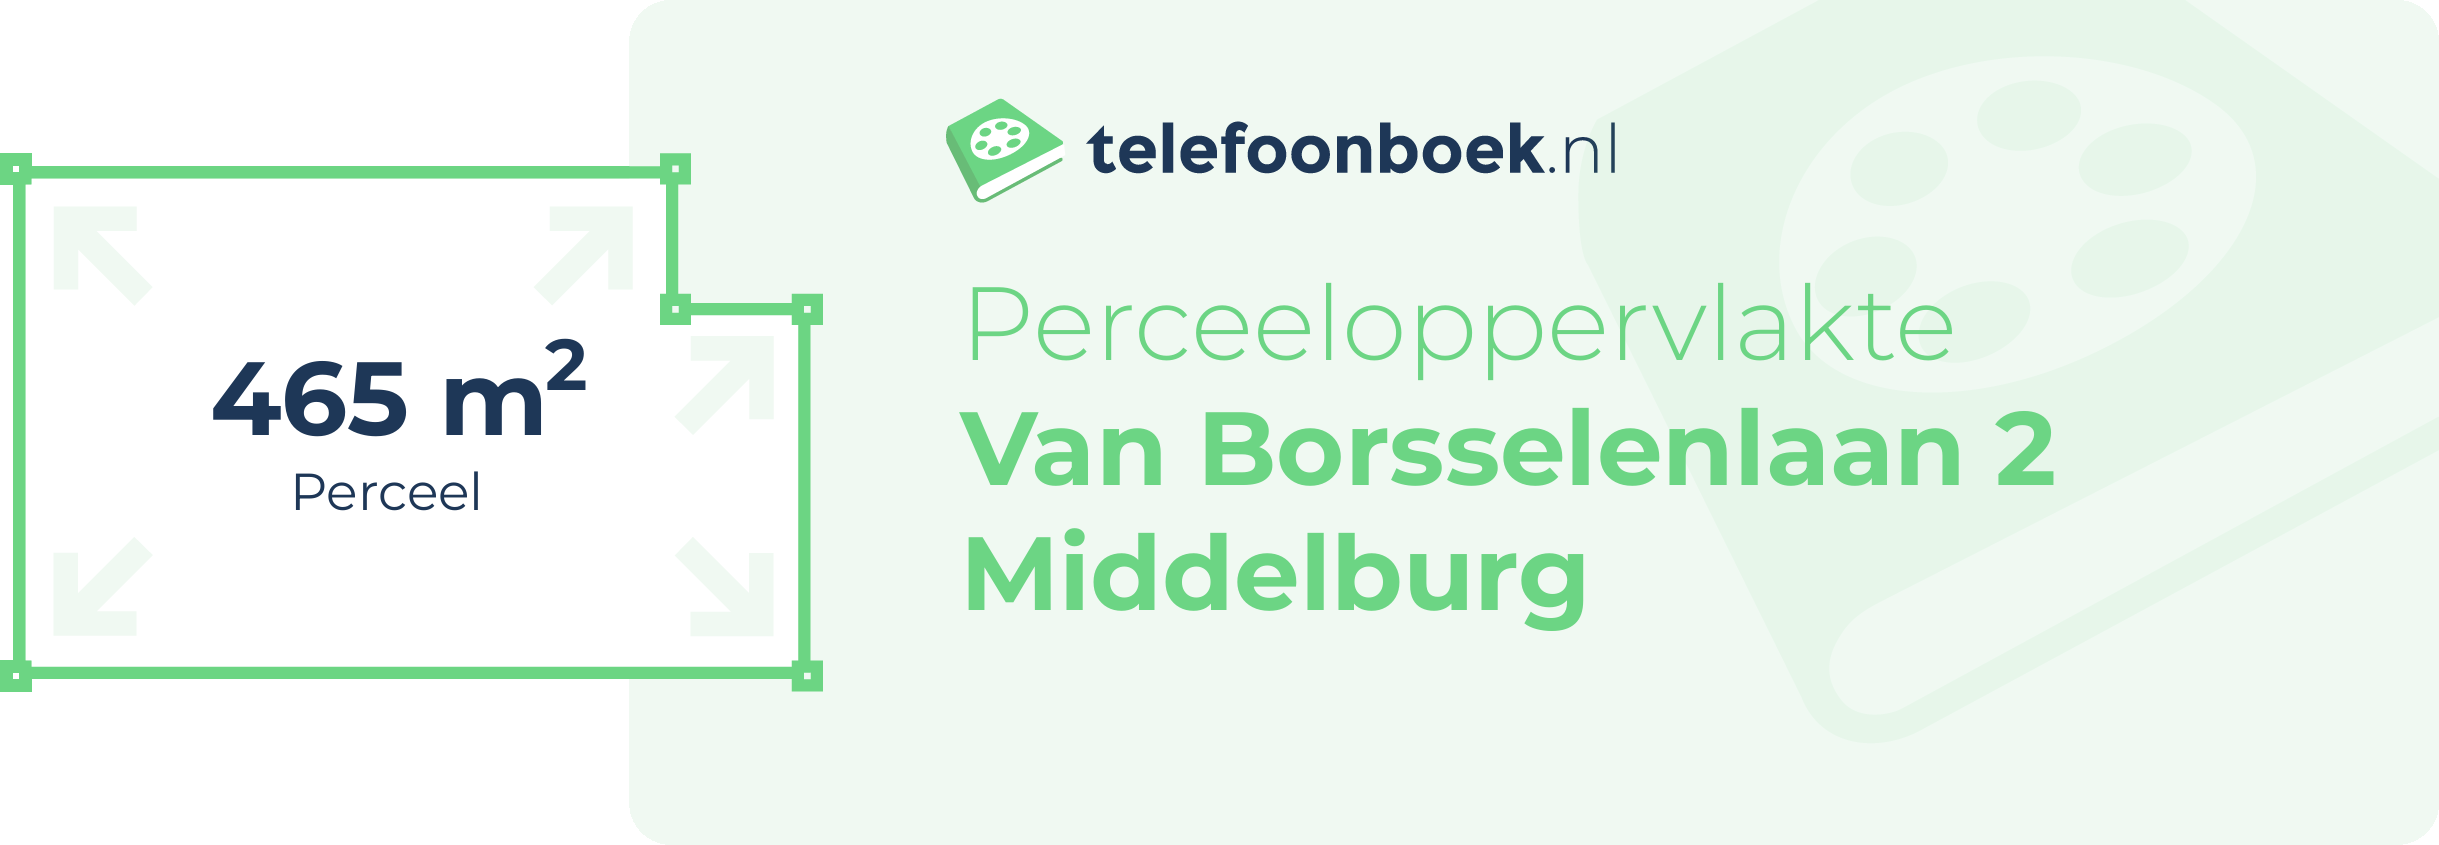 Perceeloppervlakte Van Borsselenlaan 2 Middelburg